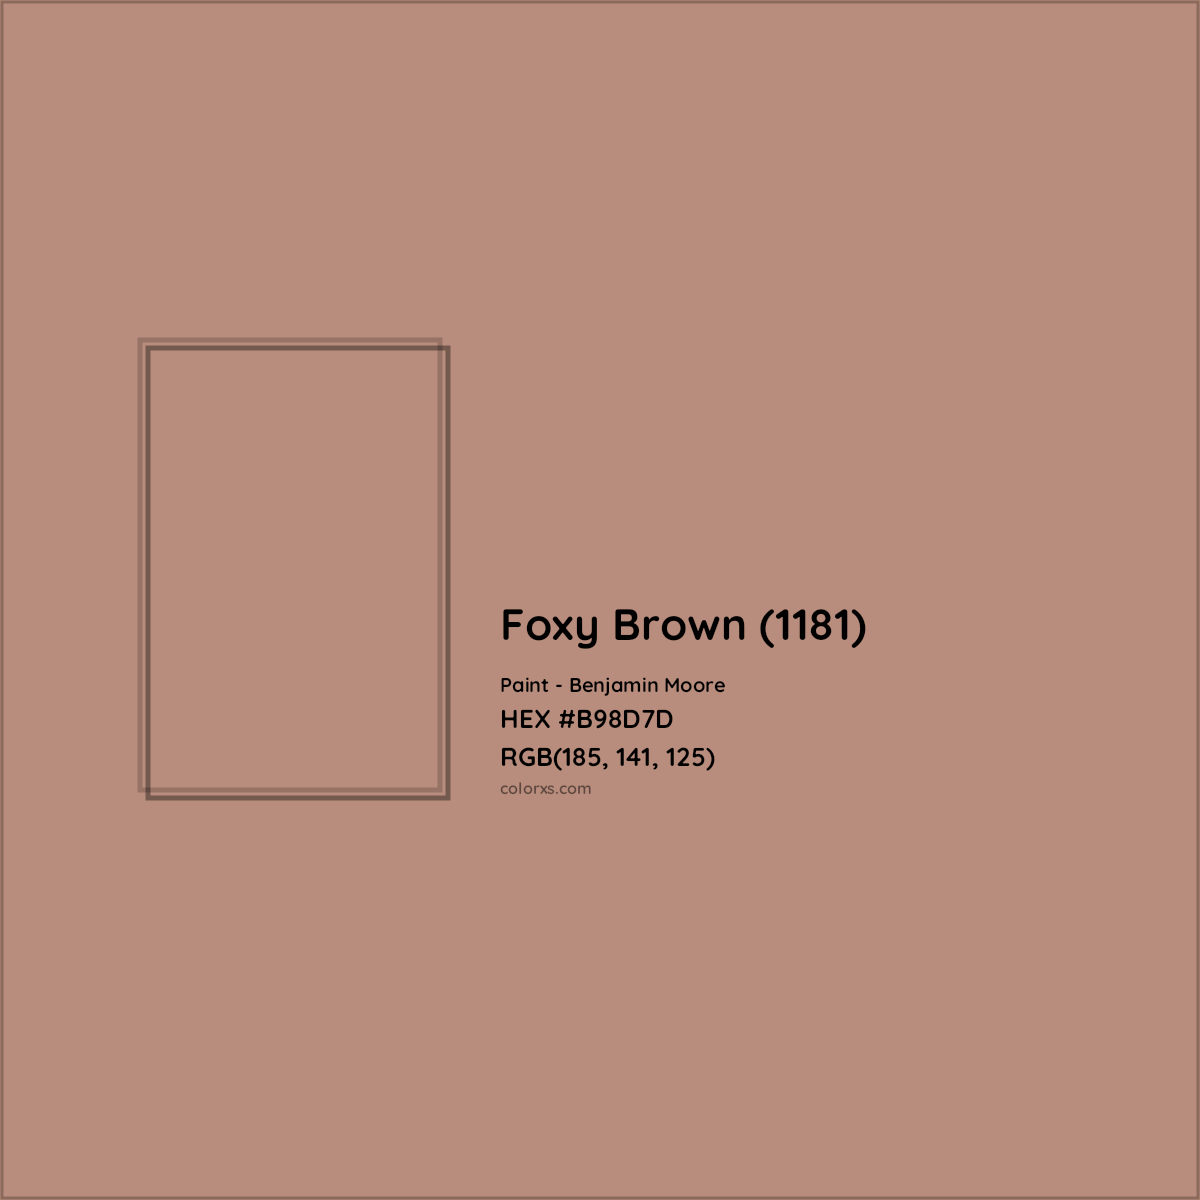 HEX #B98D7D Foxy Brown (1181) Paint Benjamin Moore - Color Code